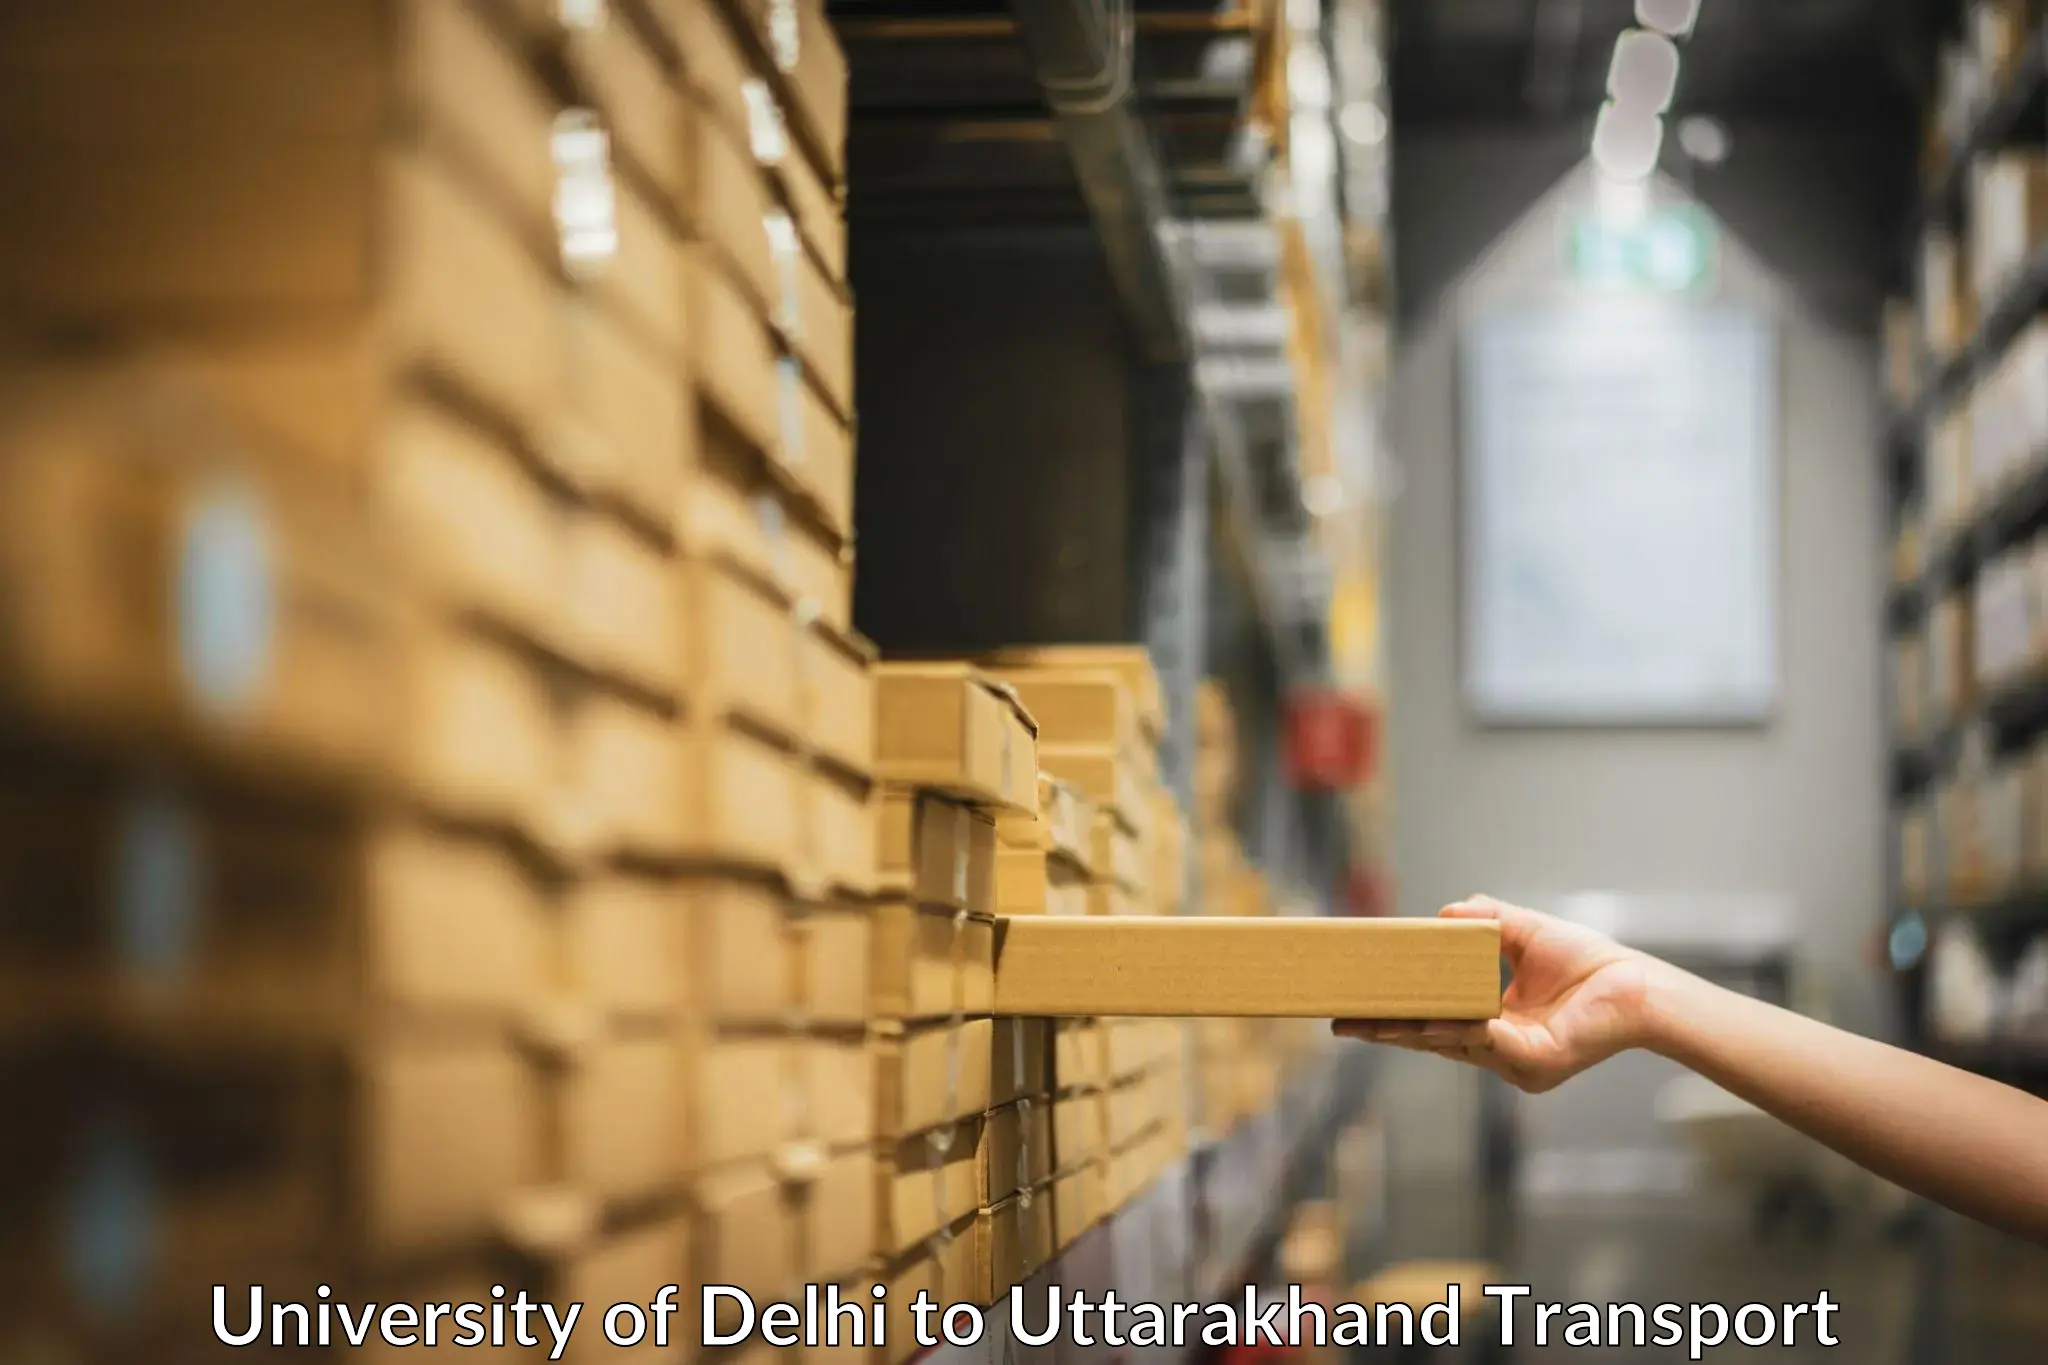 Online transport service in University of Delhi to IIT Roorkee